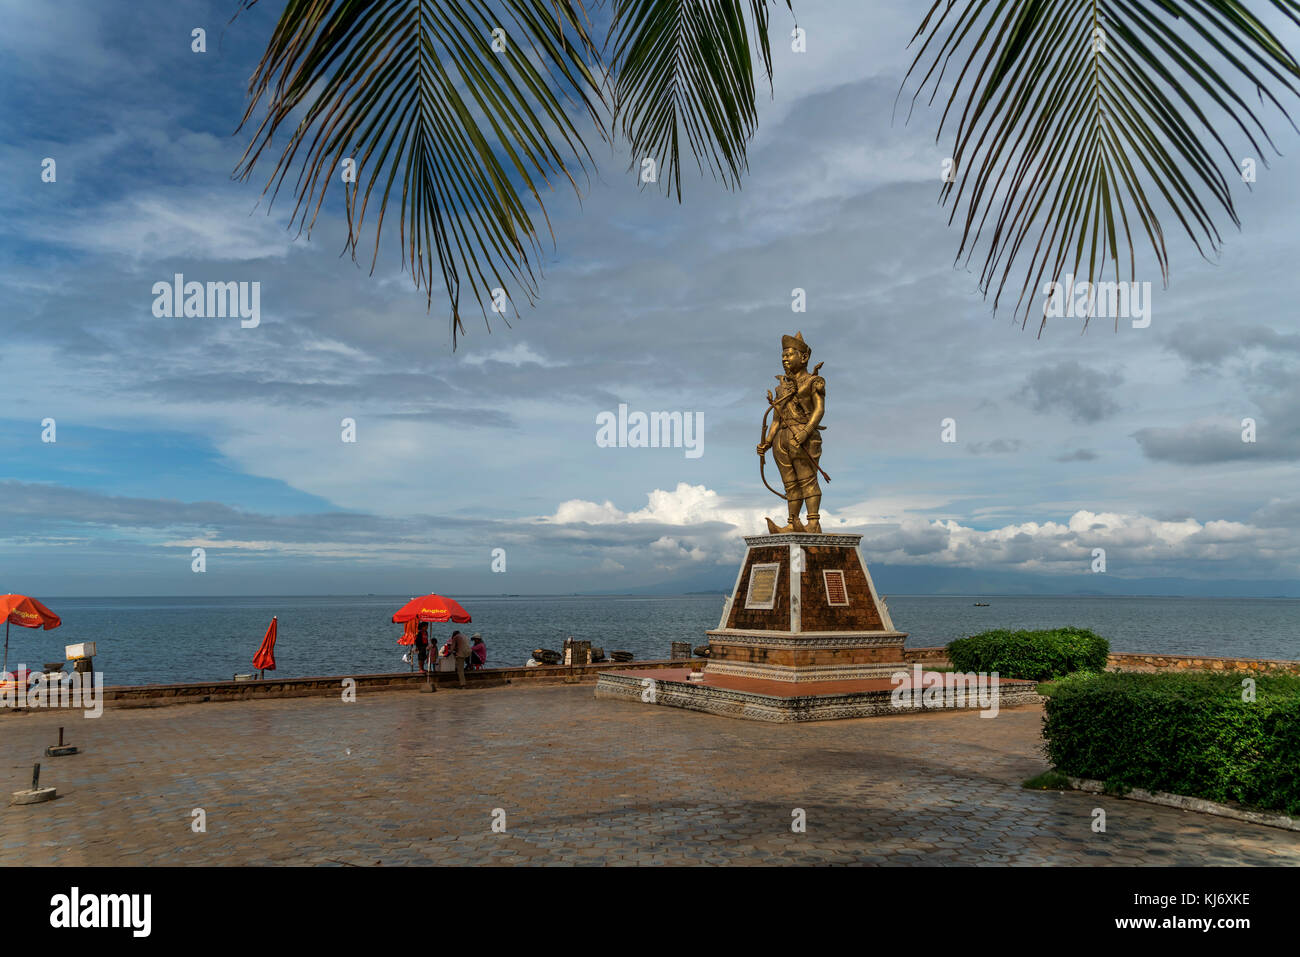 Statue König Norodom an der Küste BEI Kep, Kambodscha, Asif | statue du roi Norodom sur la côte à Kep, Cambodge, Asie Banque D'Images